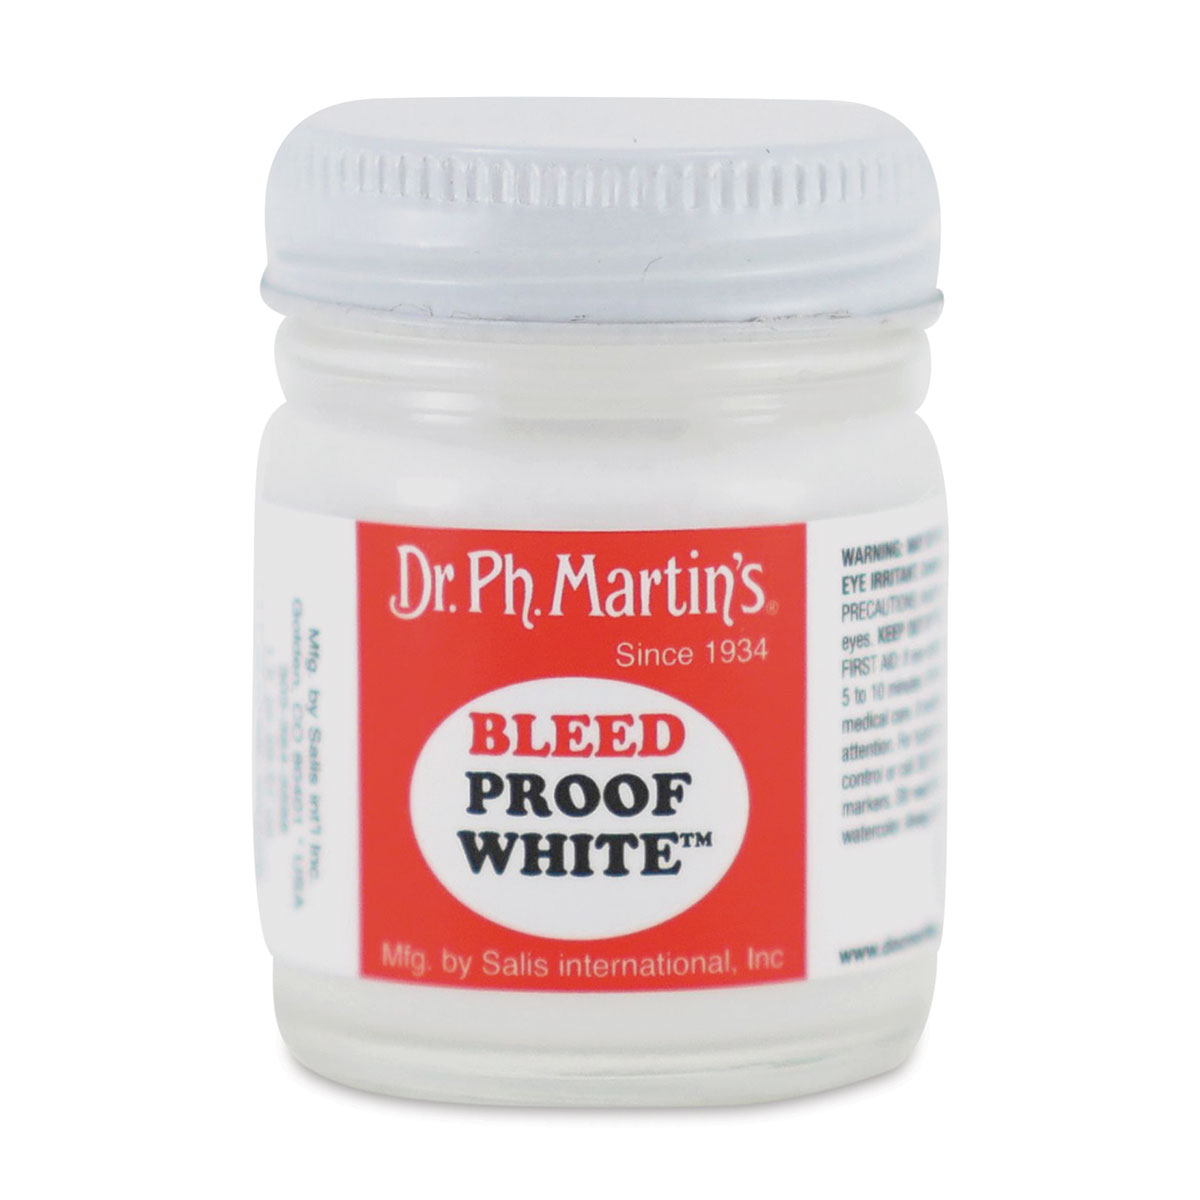 Dr. Ph. Martin's Bleedproof White 1.0 Oz 090385432015 for sale online